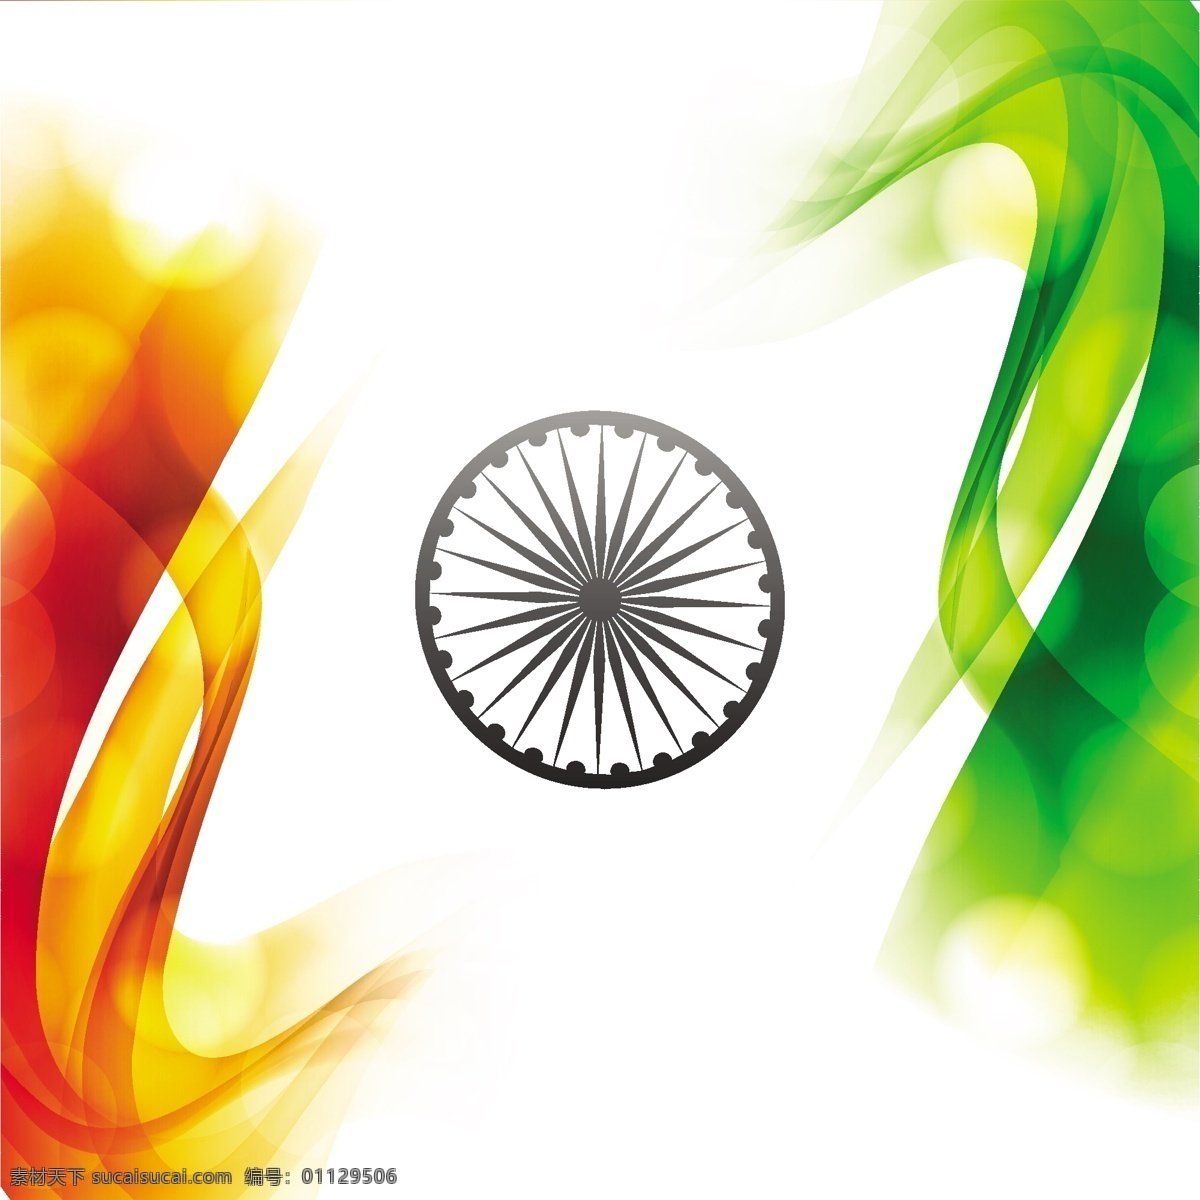 波浪形 三 色 国旗 背景 抽象 旗帜 波浪 印度 节日 车轮 和平 印度国旗 独立日 国家 自由 日 政府 爱国 一月 独立 白色